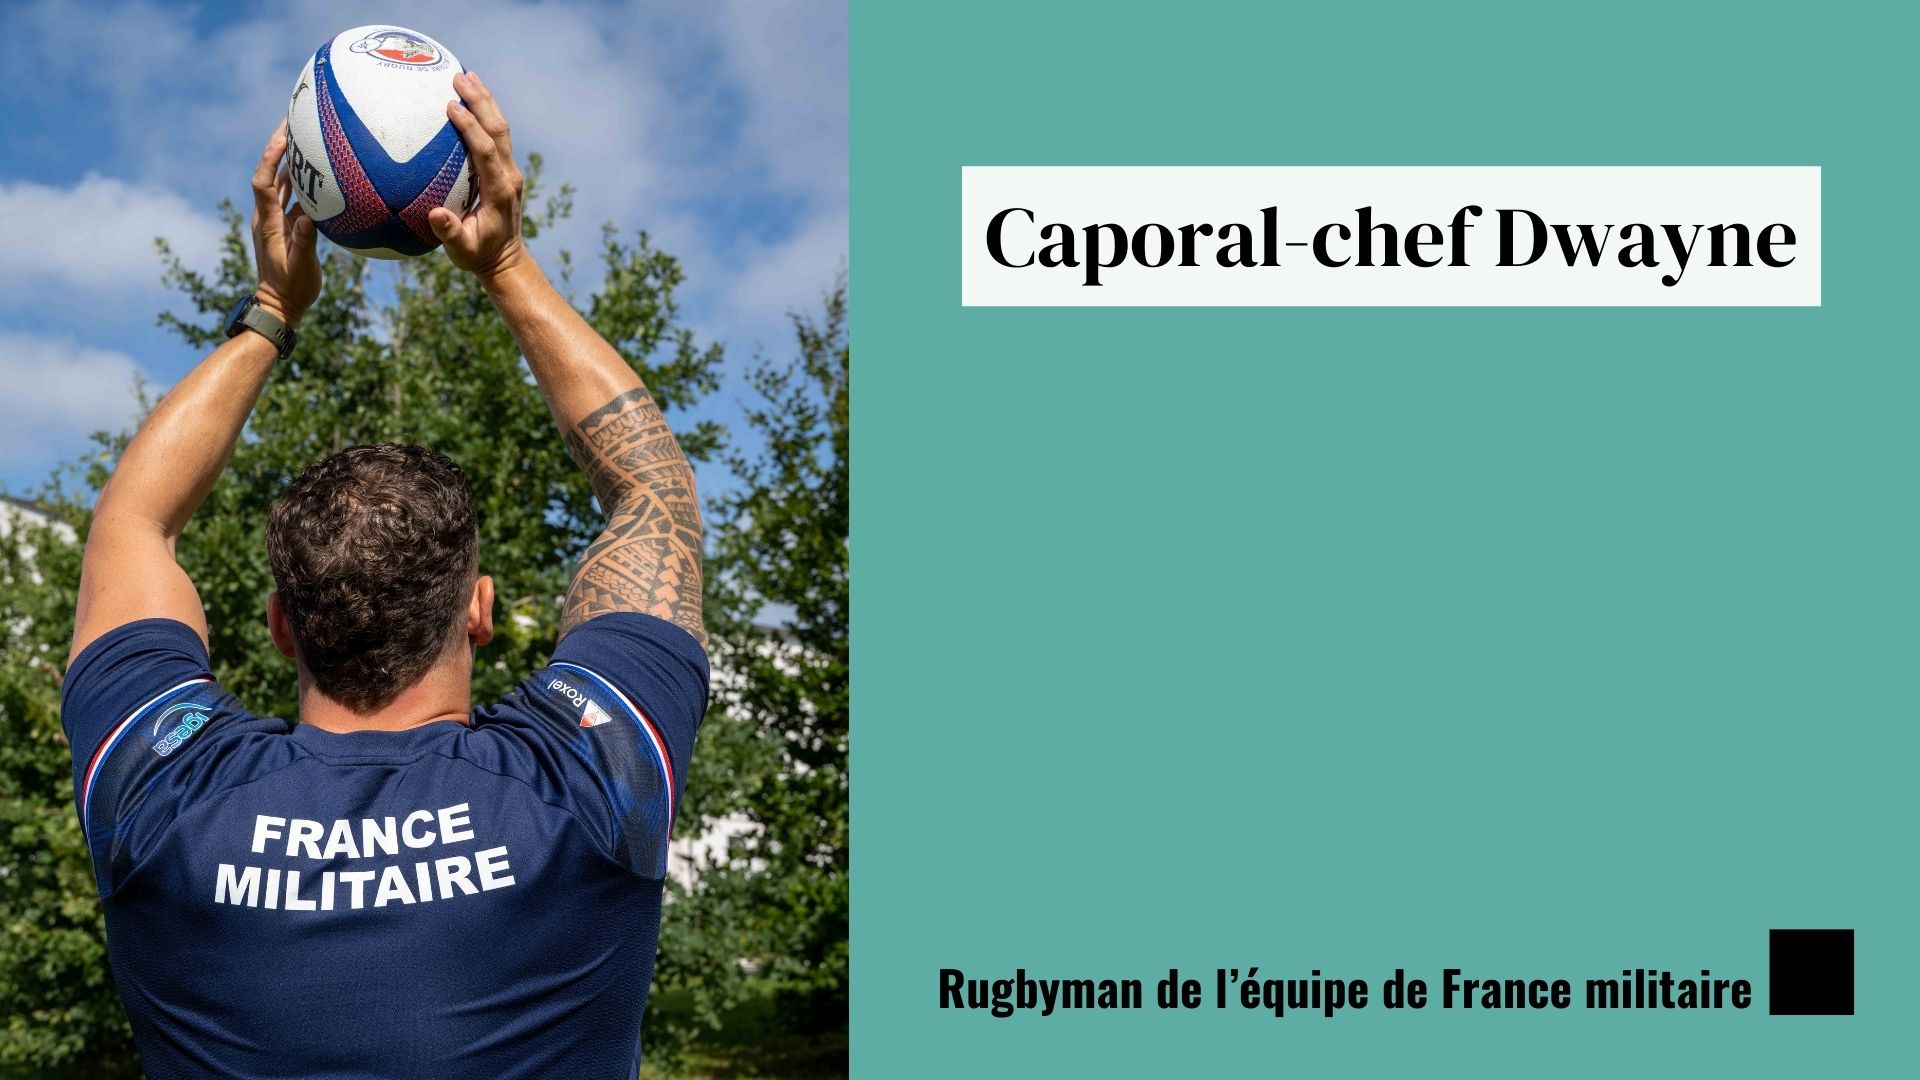 Caporal-chef Dwayne, rugbyman de l'équipe de France militaire